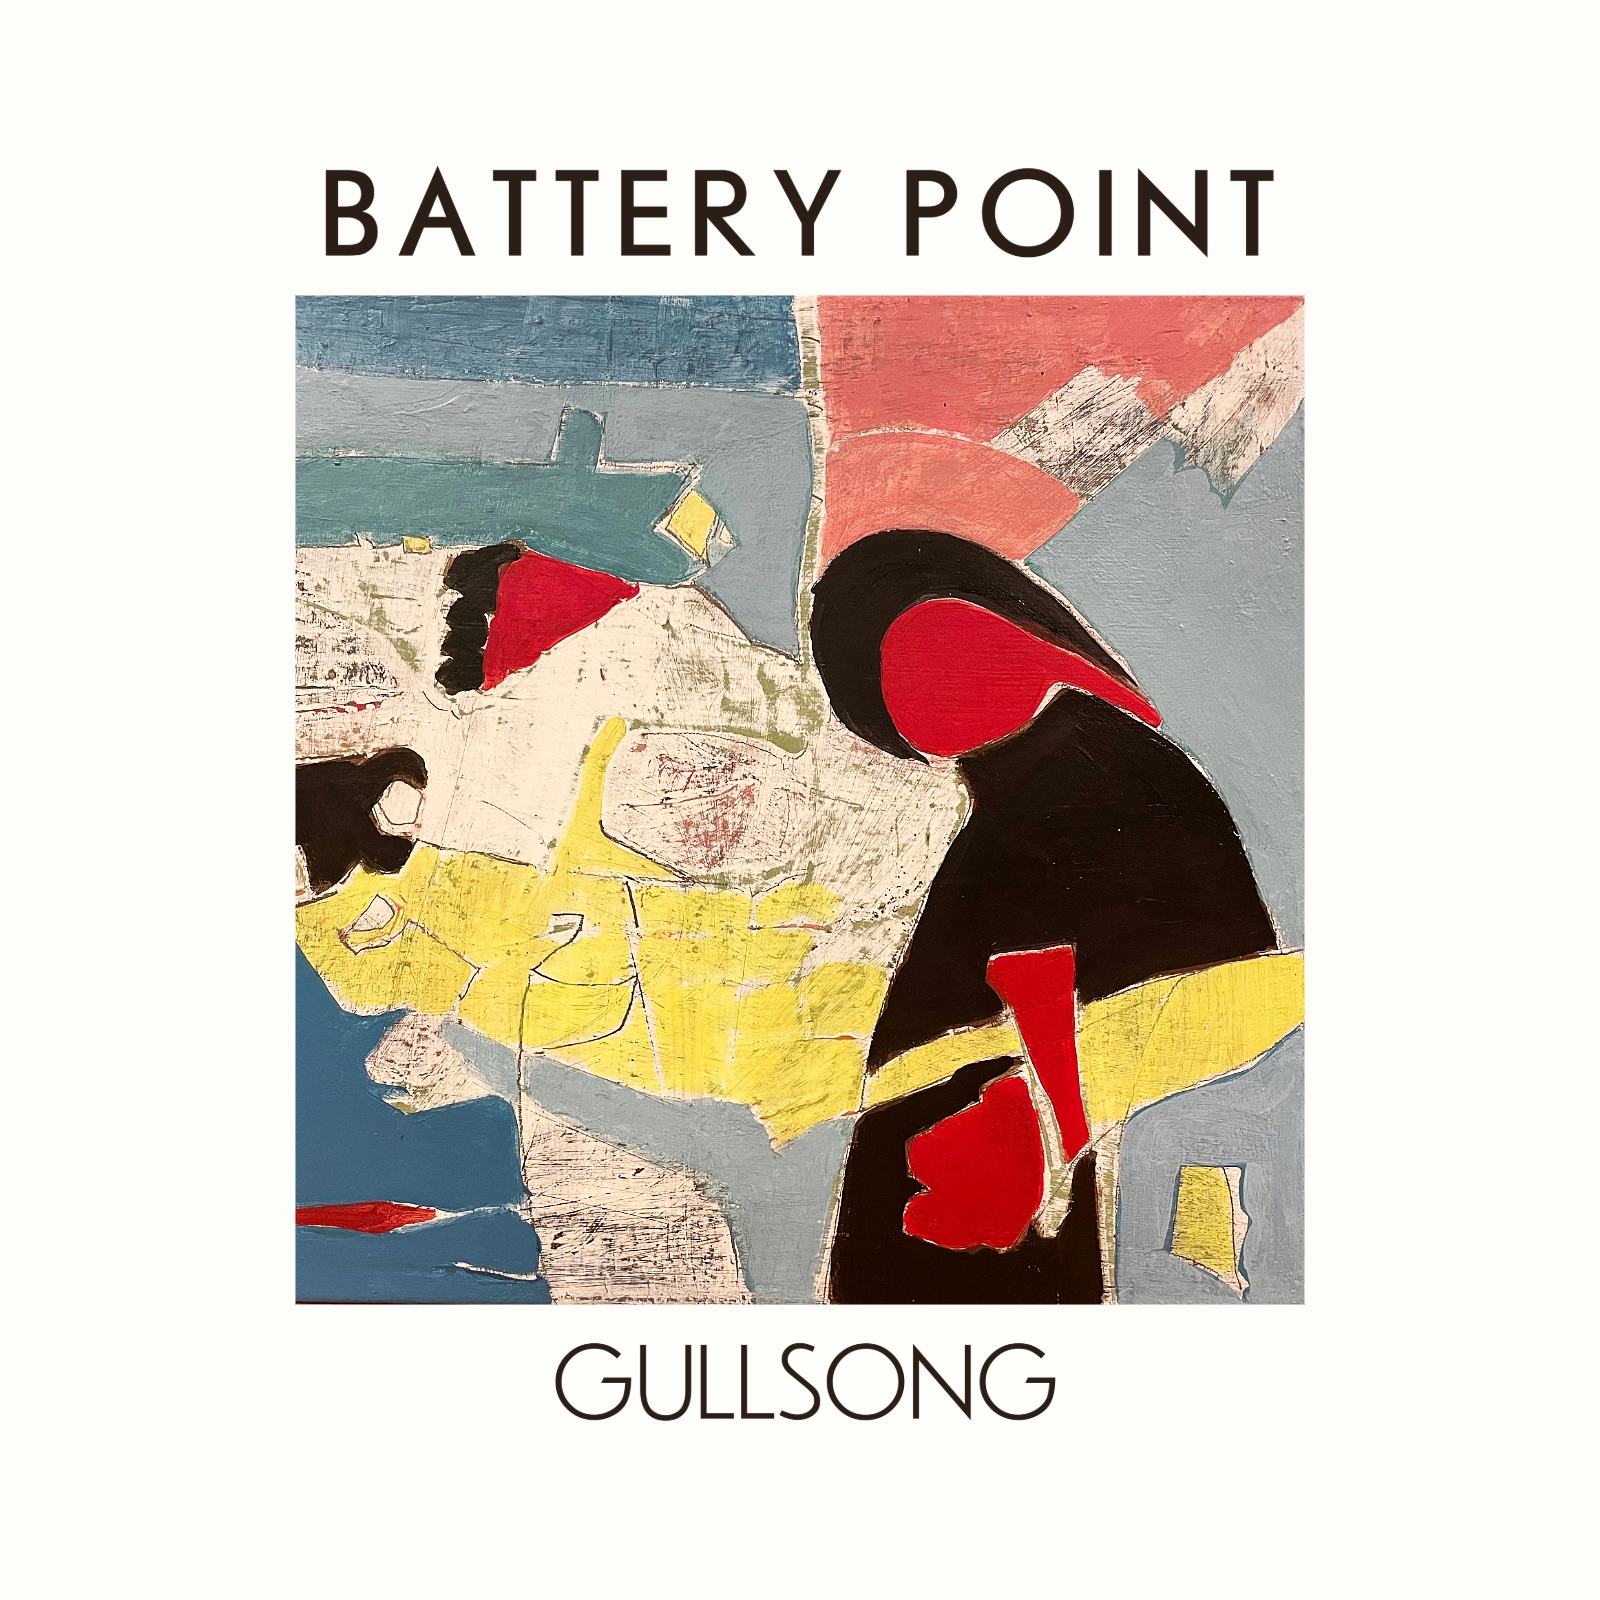 LISTEN: “Gullsong” by Battery Point